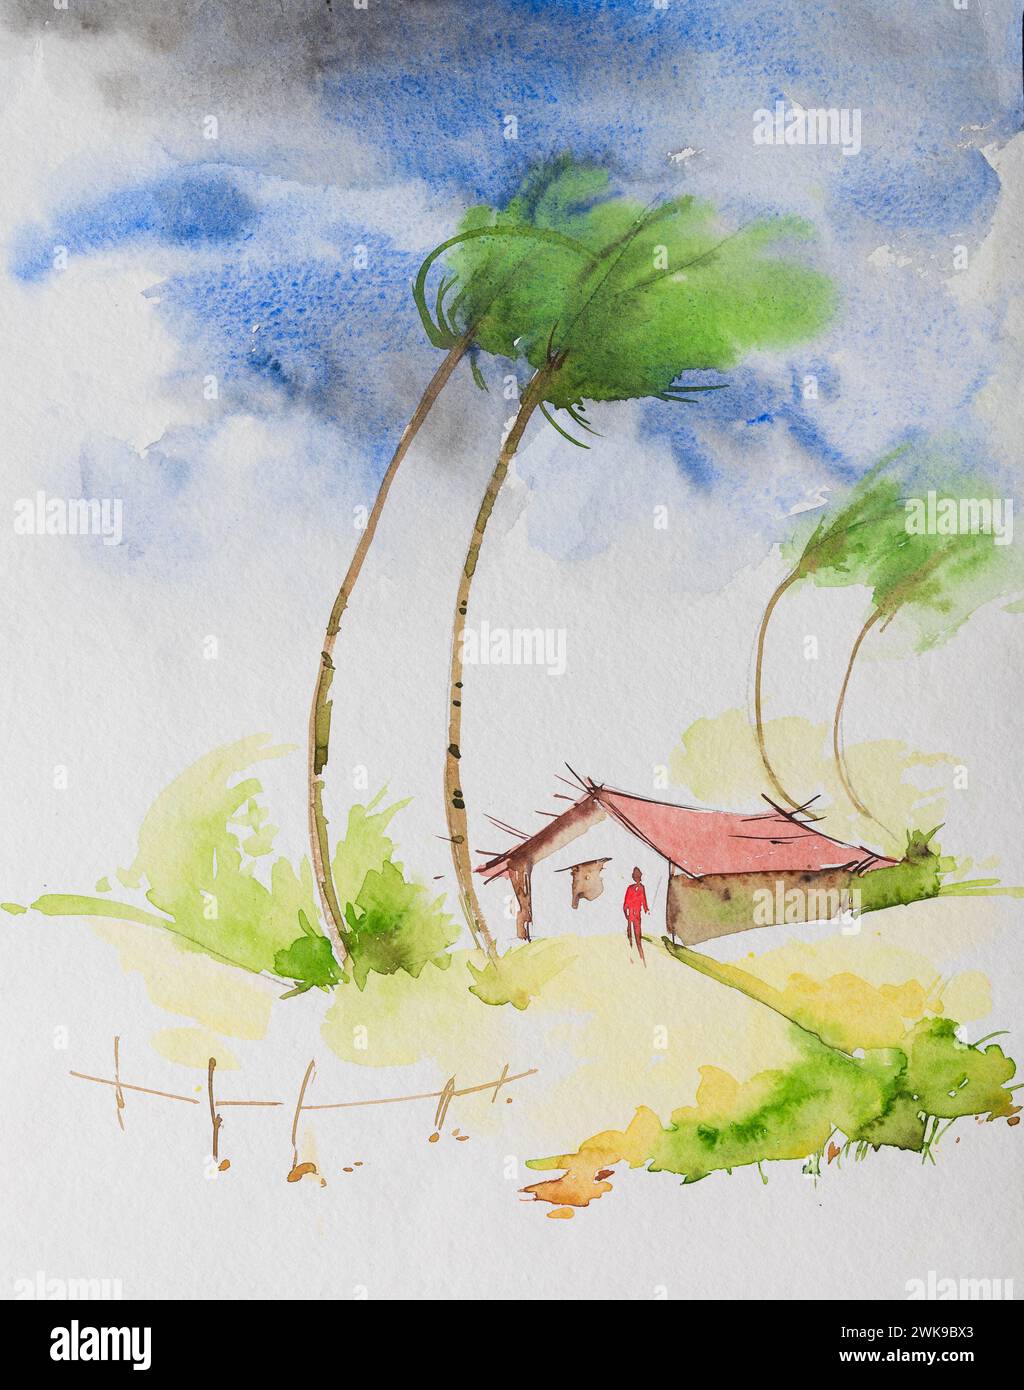 Image aquarelle d'un strom dans un village indien. Vent tendu sur les cocotiers et un homme devant sa maison, représentant la mousson indienne. Peint à la main Banque D'Images